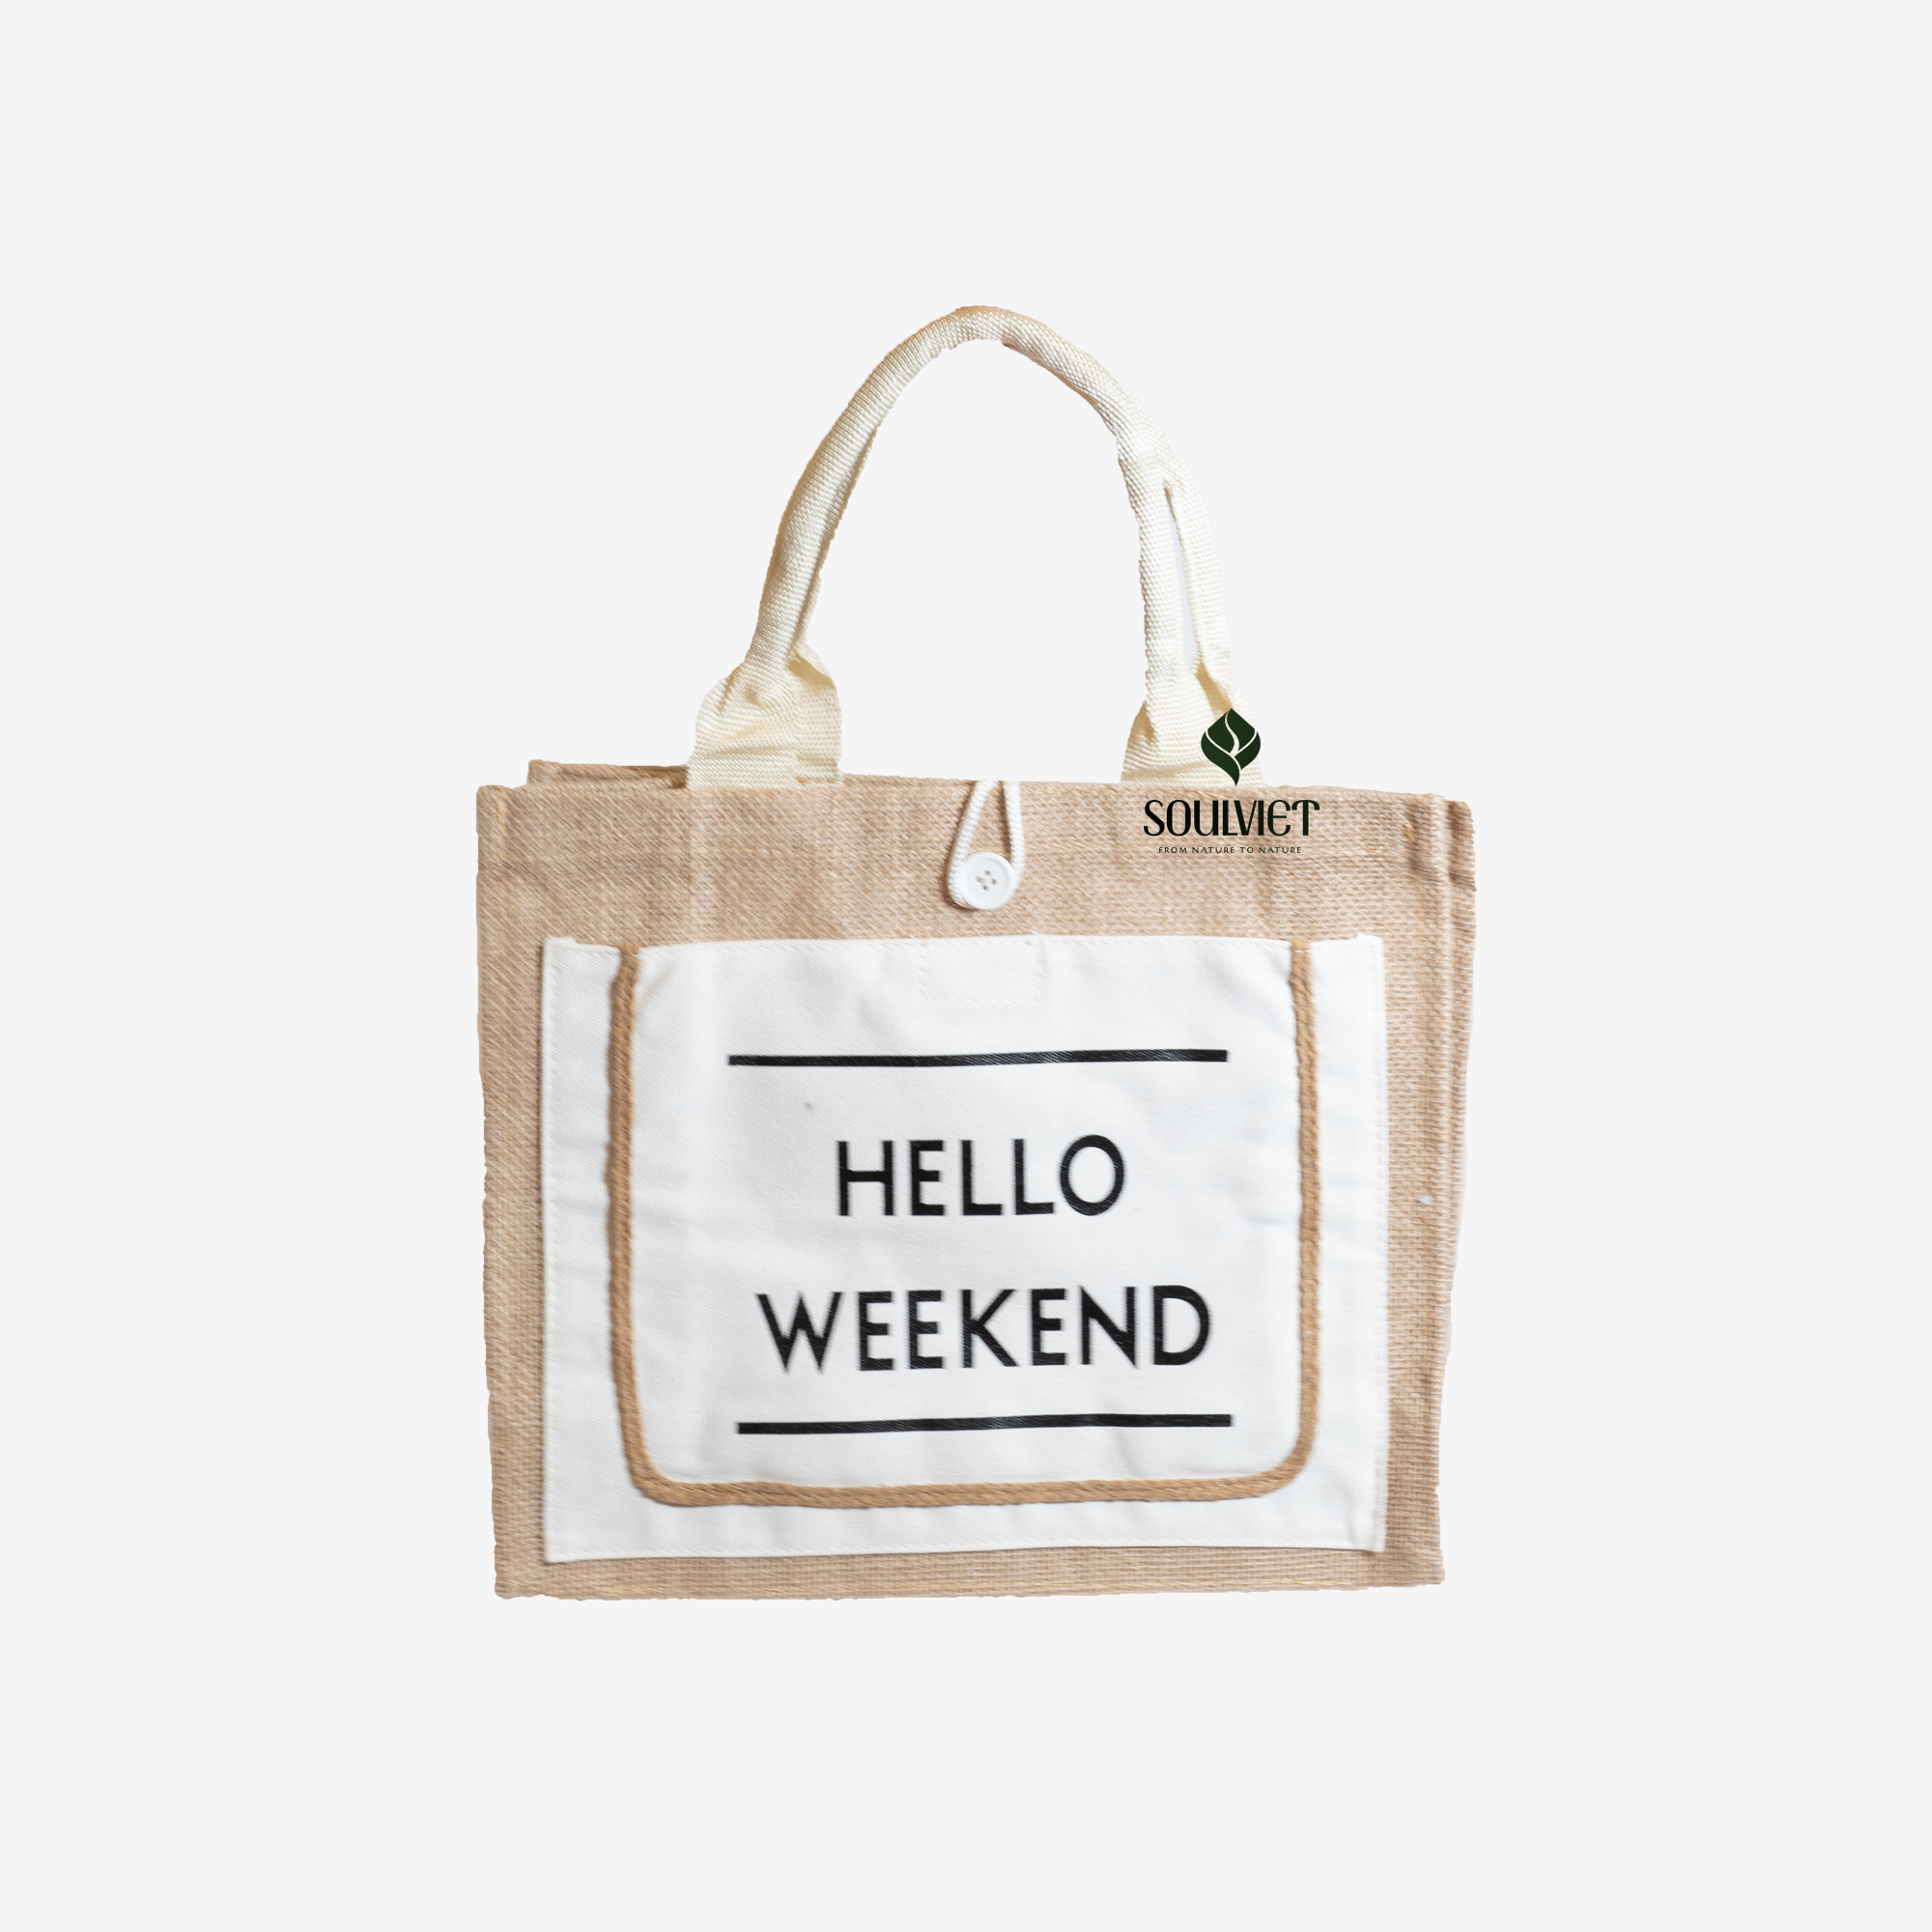 Tuí xách vải bố in chữ “Hello Weekend”